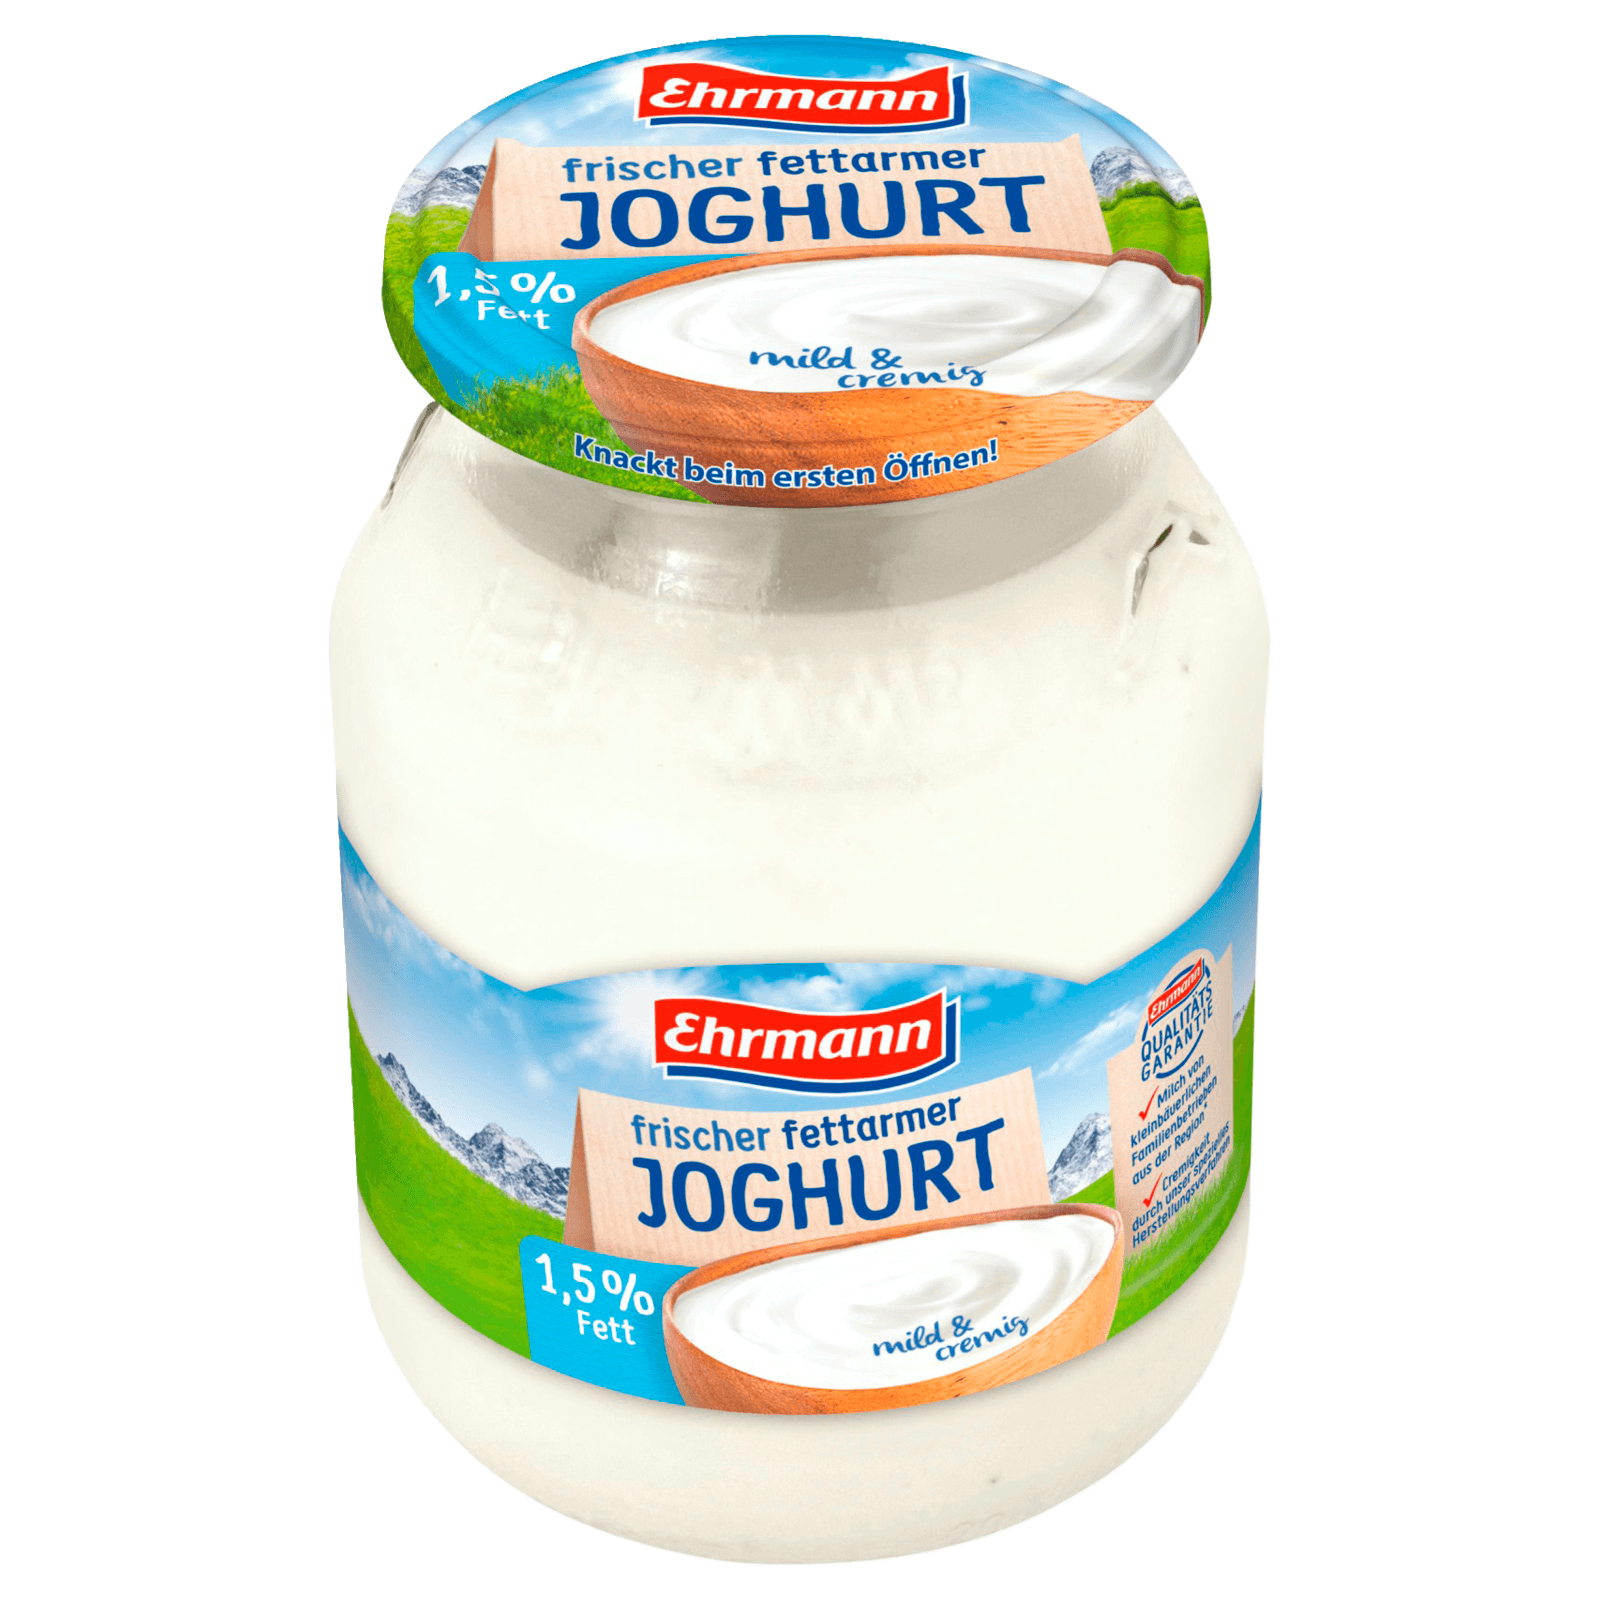 Ehrmann Frischer Fettarmer Joghurt 1,5% 500g  für 1.89 EUR